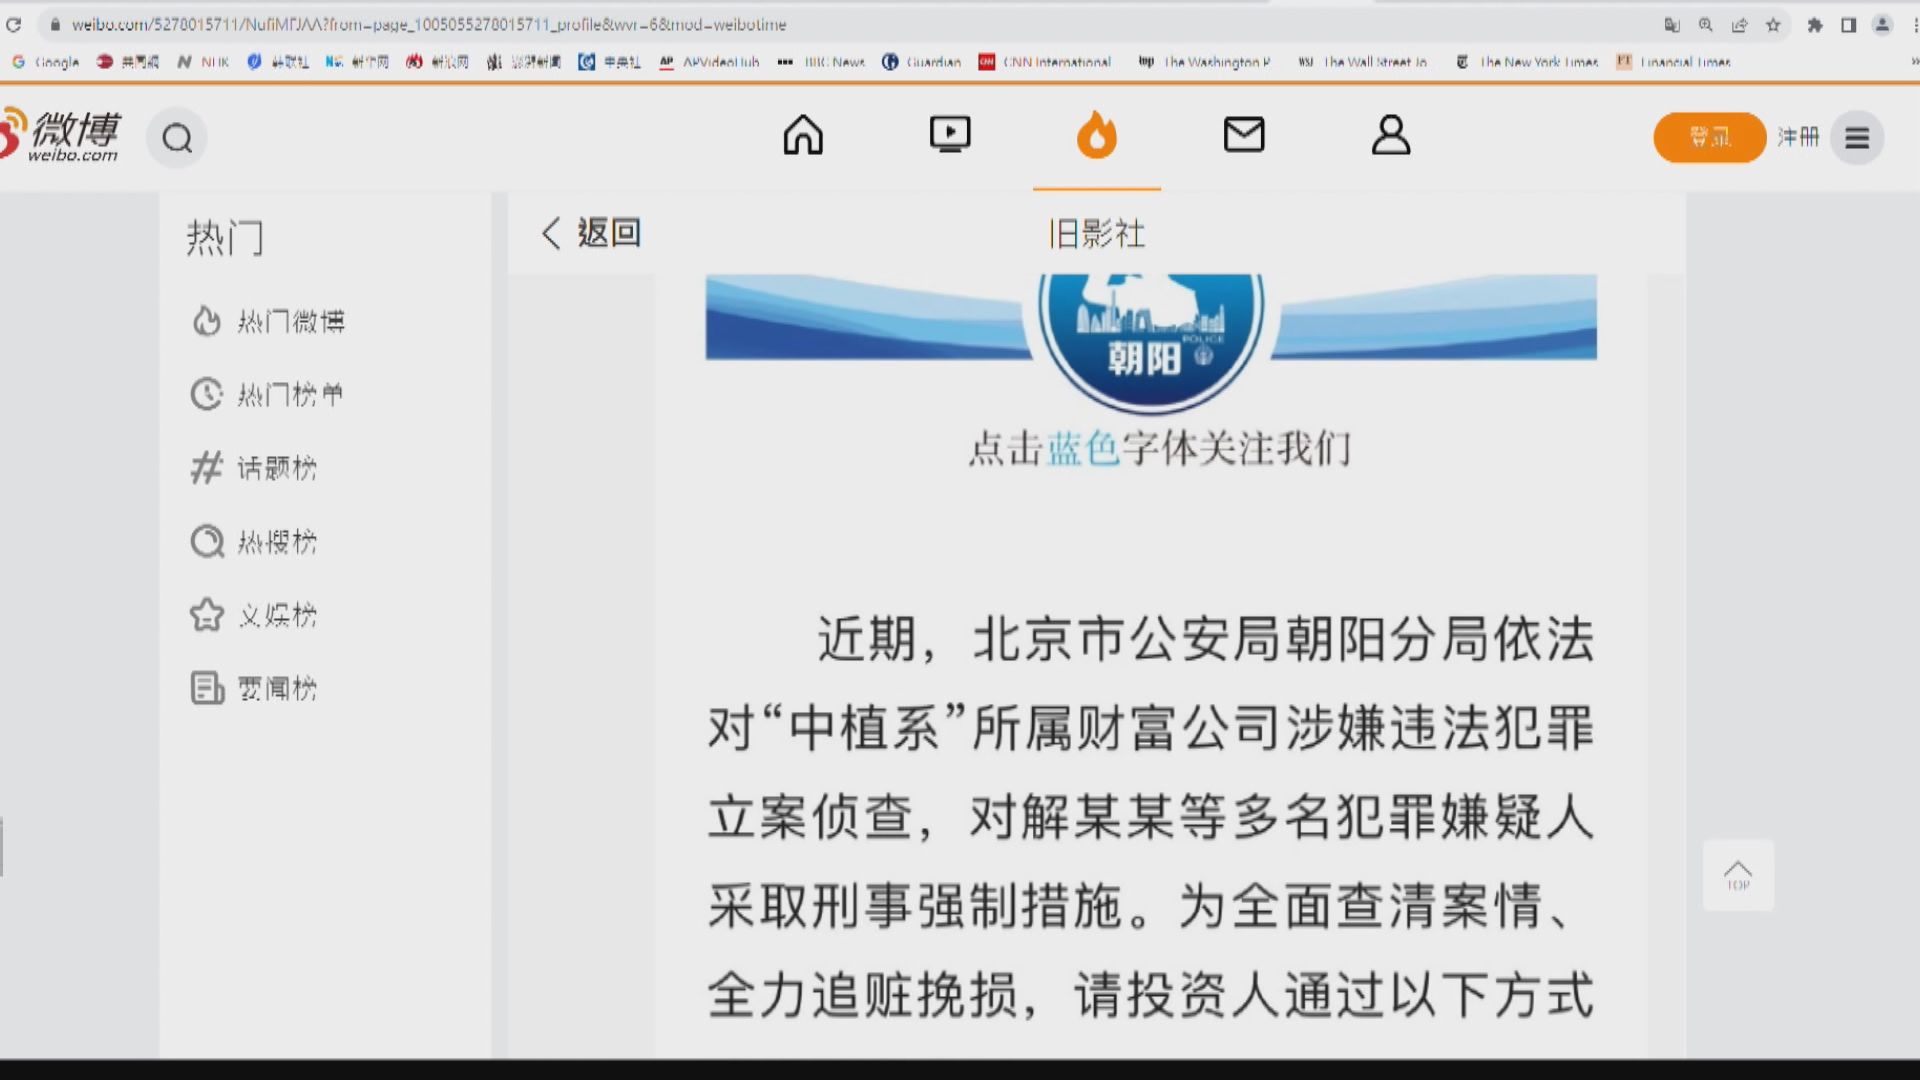 北京市公安調查中植集團所屬財富公司 拘捕多人